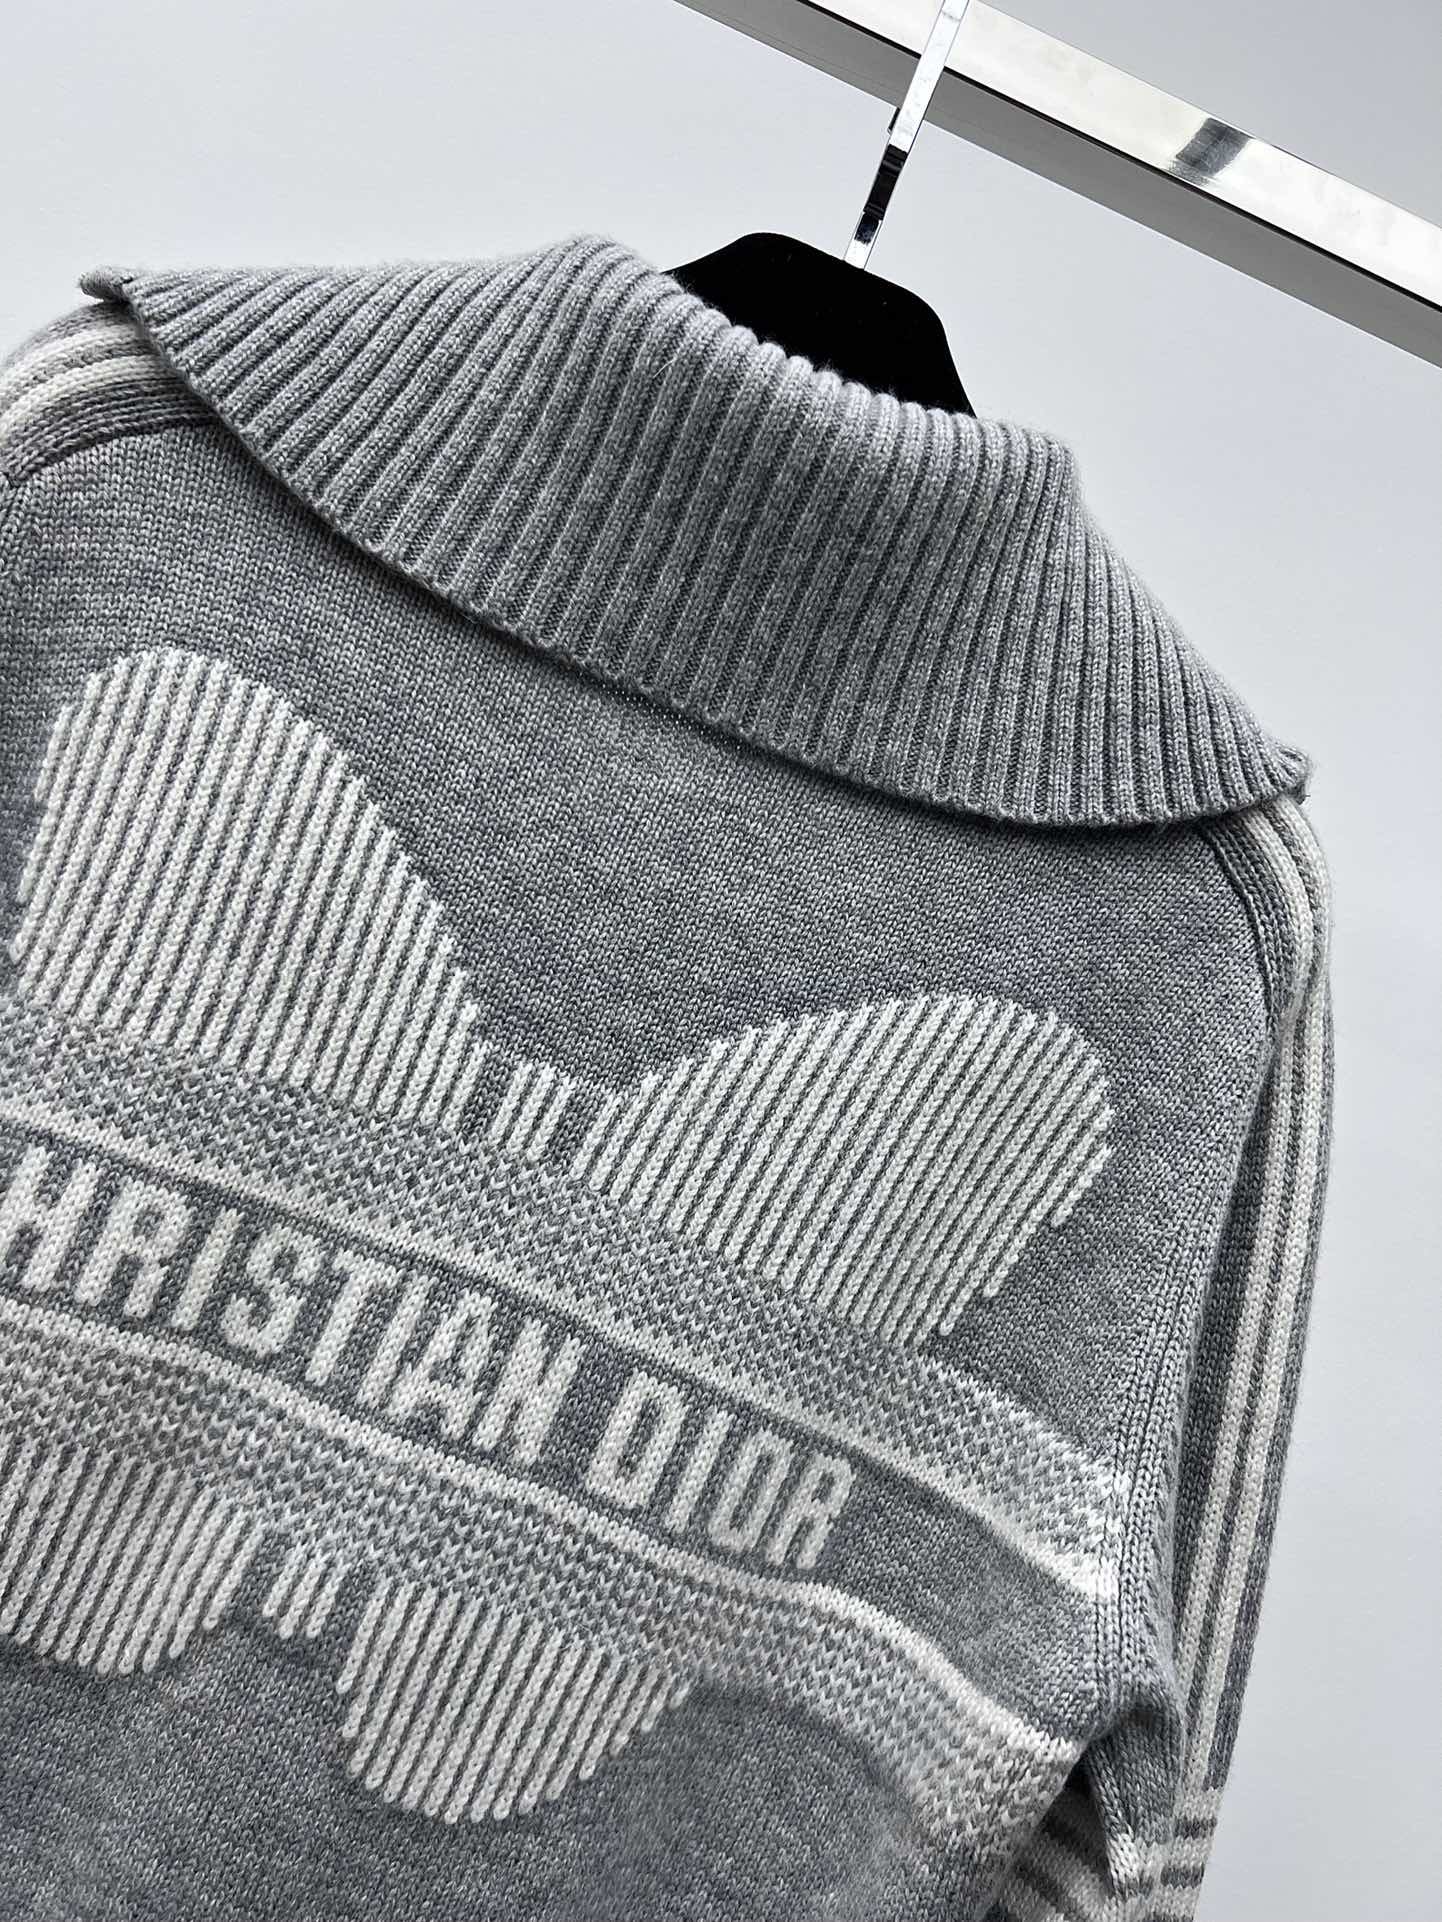 Dio*滑雪系列翻领开衫23秋冬DiorAlps限定系列采用羊毛羊绒混纺针织面料精心制作饰以对比色蝴蝶图